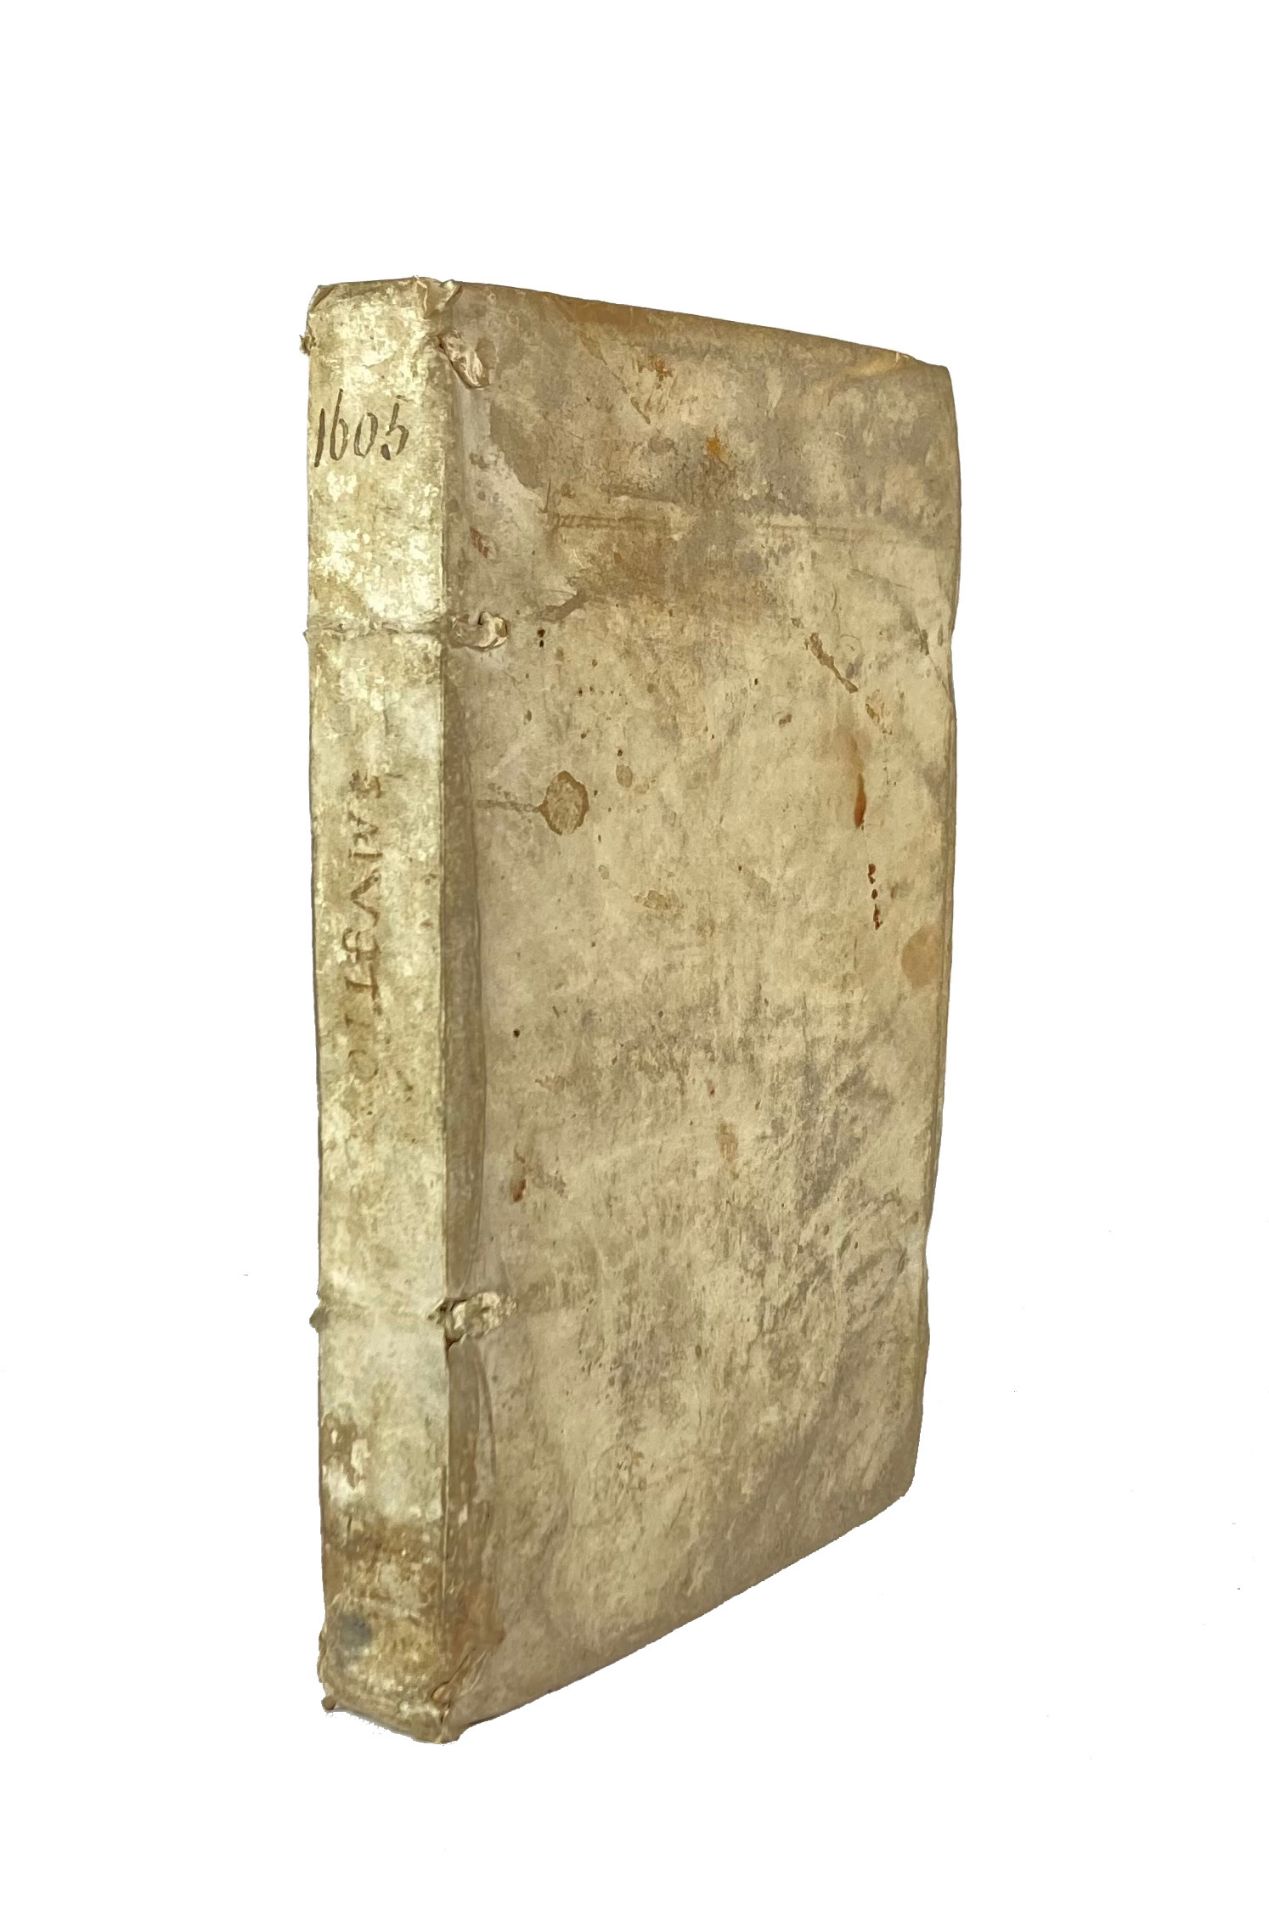 SALLUSTIUS. De Catilinae coniuratione, ac Bello Iugurthino historiae. (Lyon), Gryphius, 1555. 279